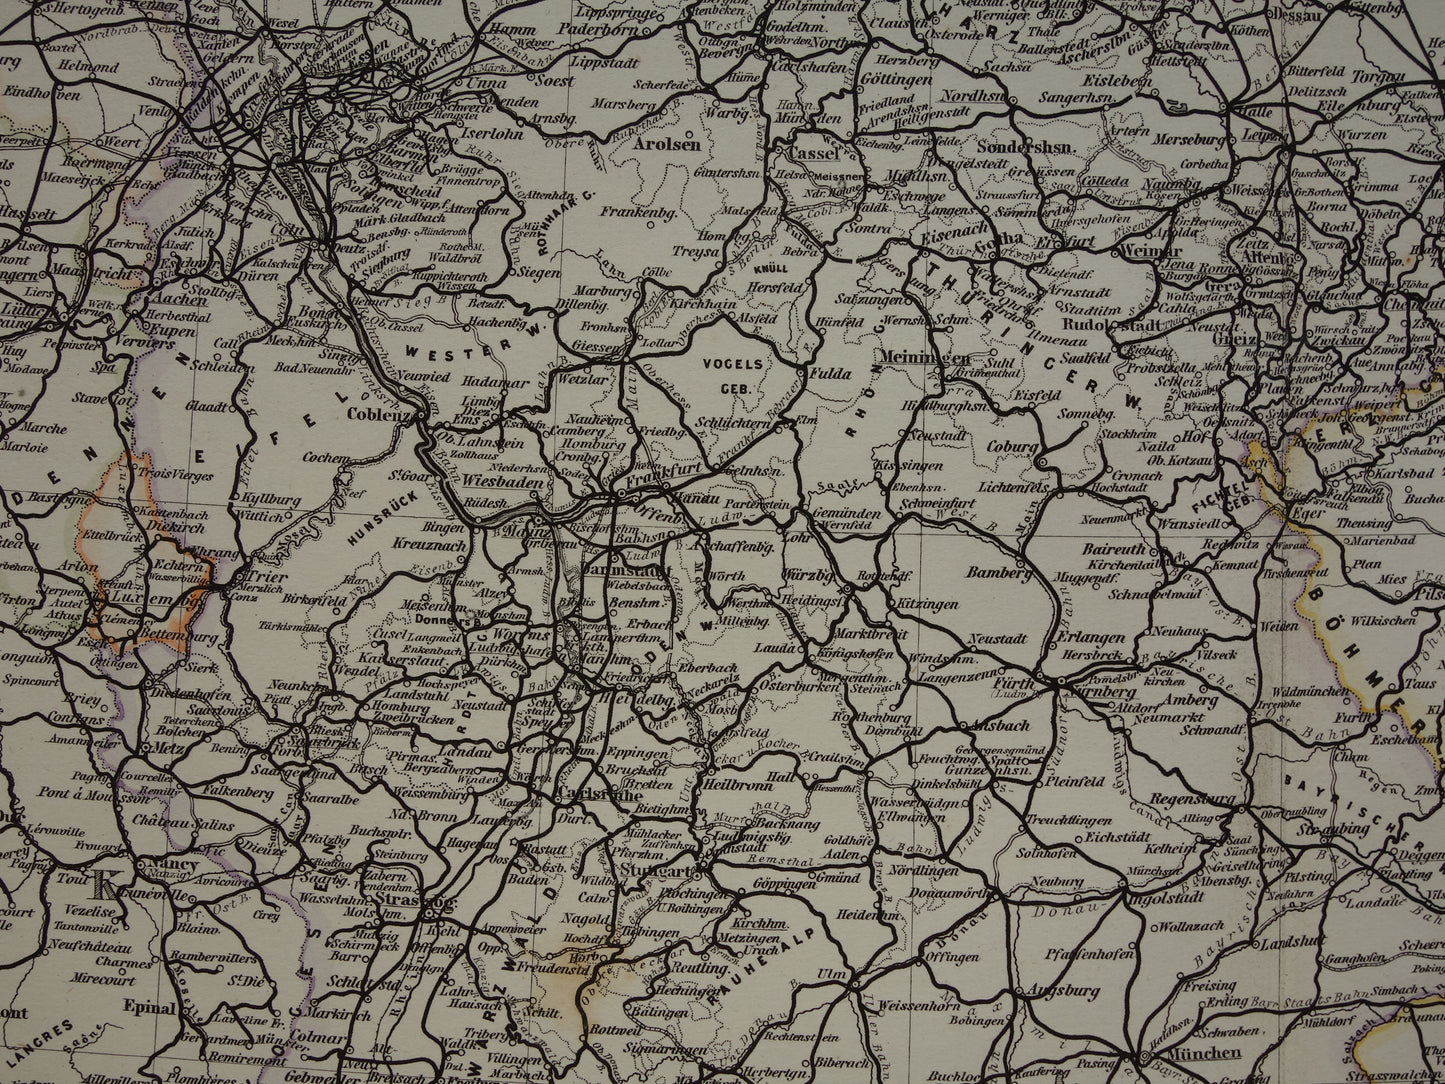 Antieke kaart van Spoorwegen in Nederland Duitsland originele 145+ jaar oude landkaart spoorlijnen centraal Europa spoorkaart